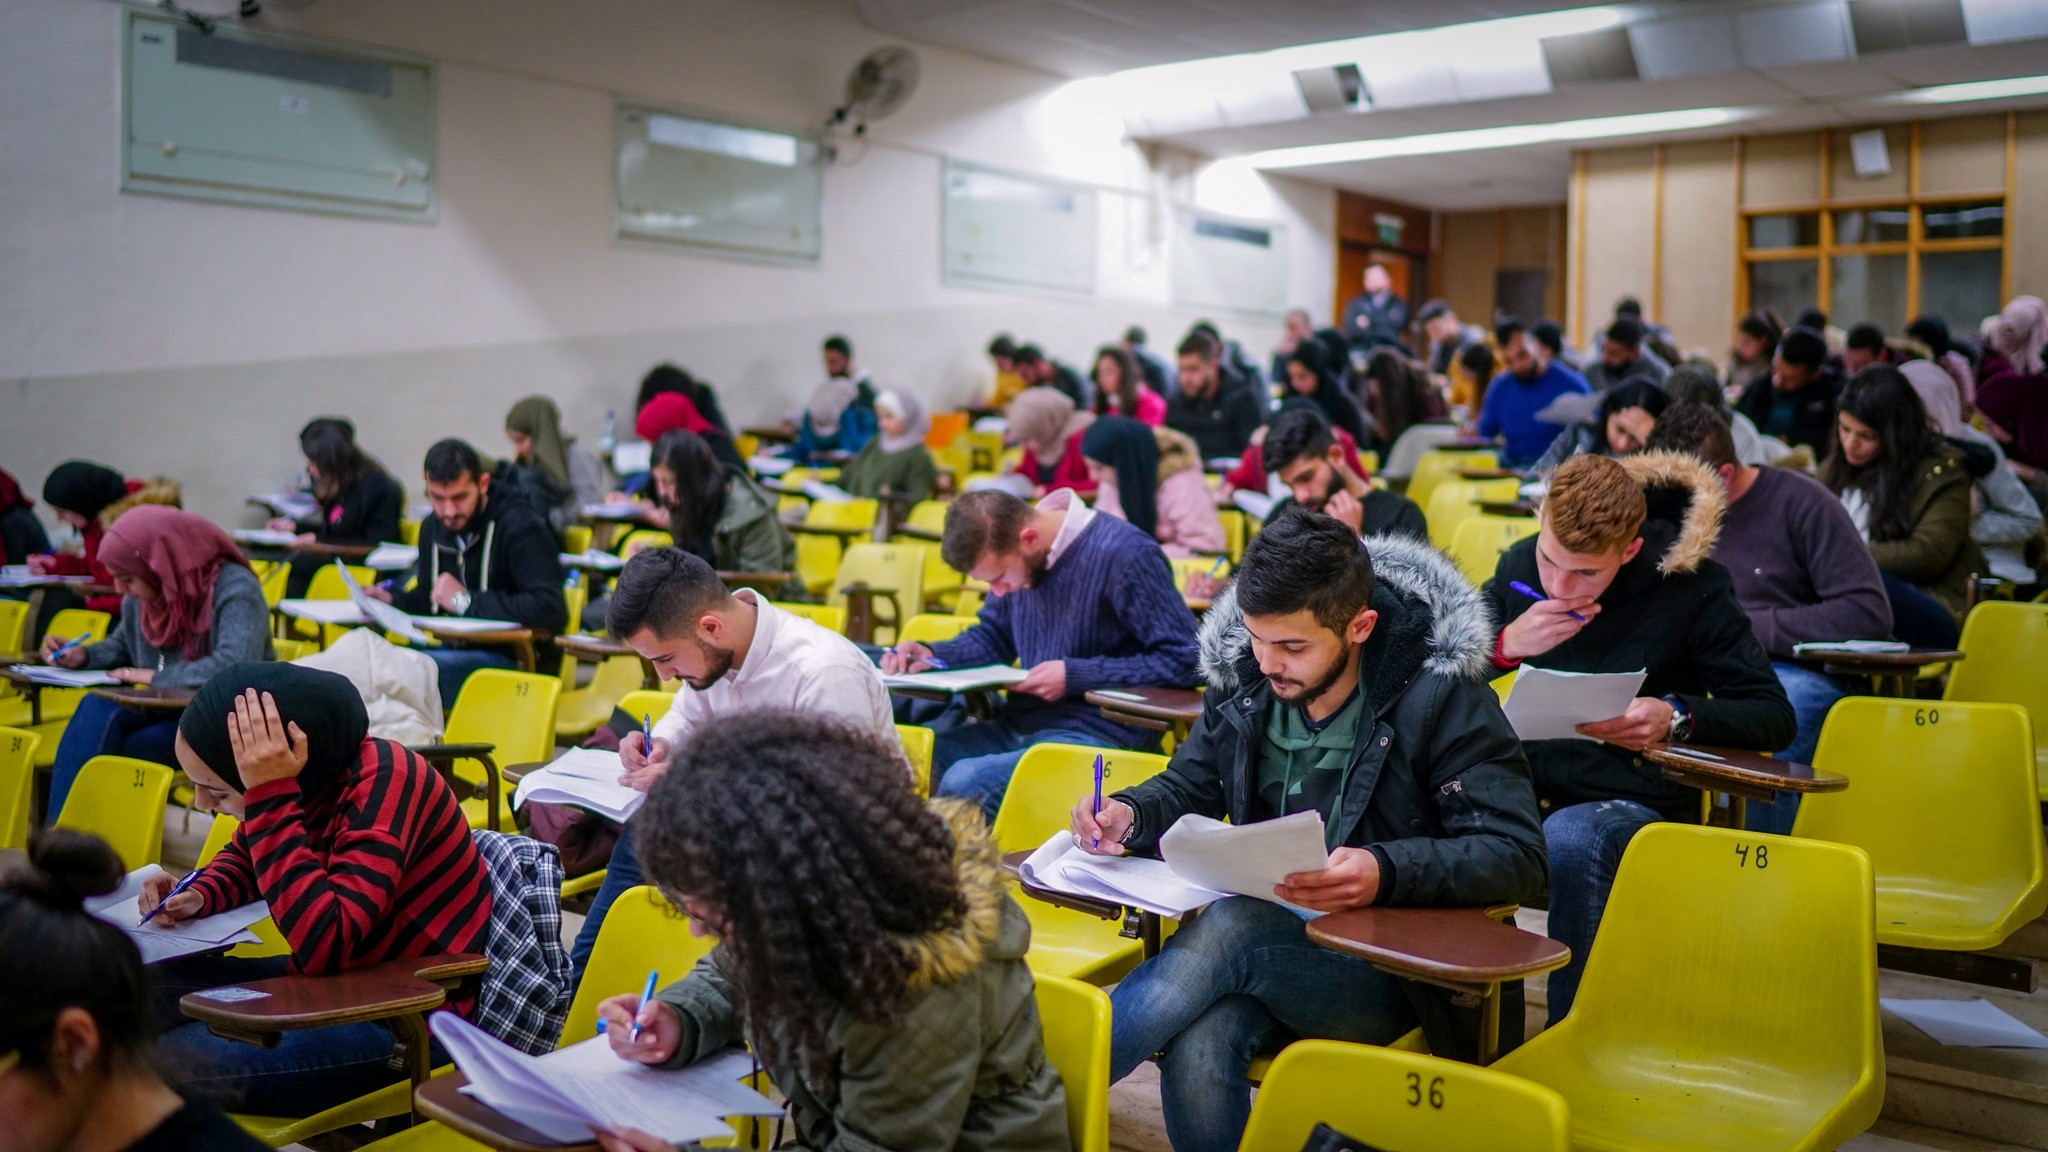 אקדמיה לשוויון דורשת לבטל את הגבלות התנועה הפוגעות במוסדות הפלסטיניים להשכלה גבוהה